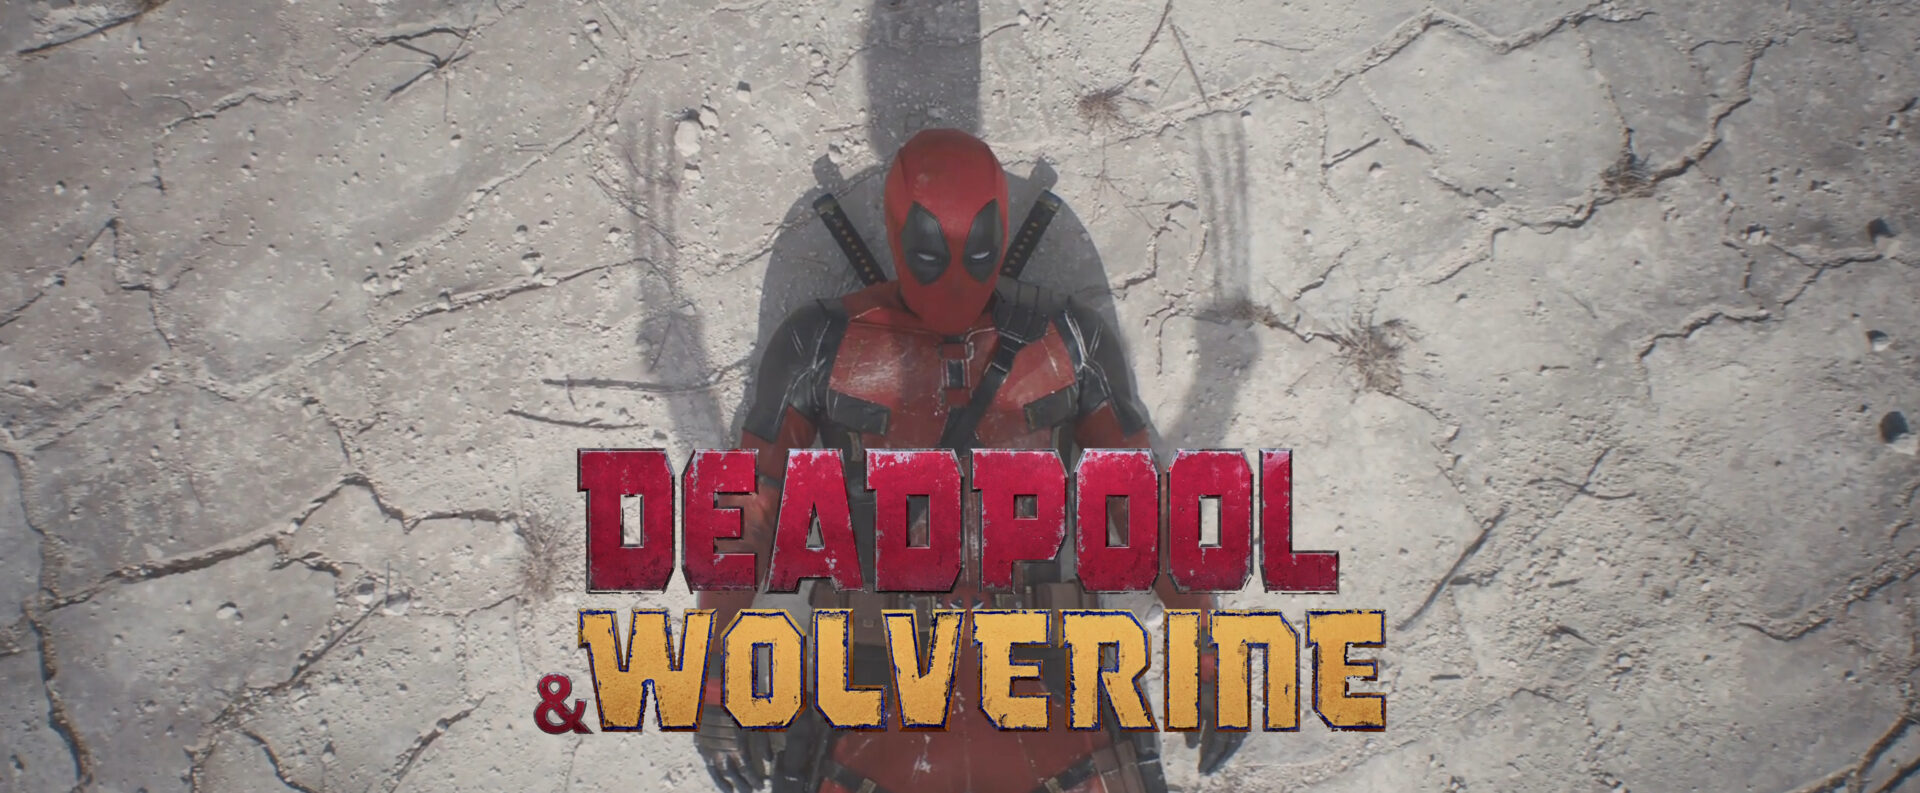 deadpool wolverine teaser trailer banner